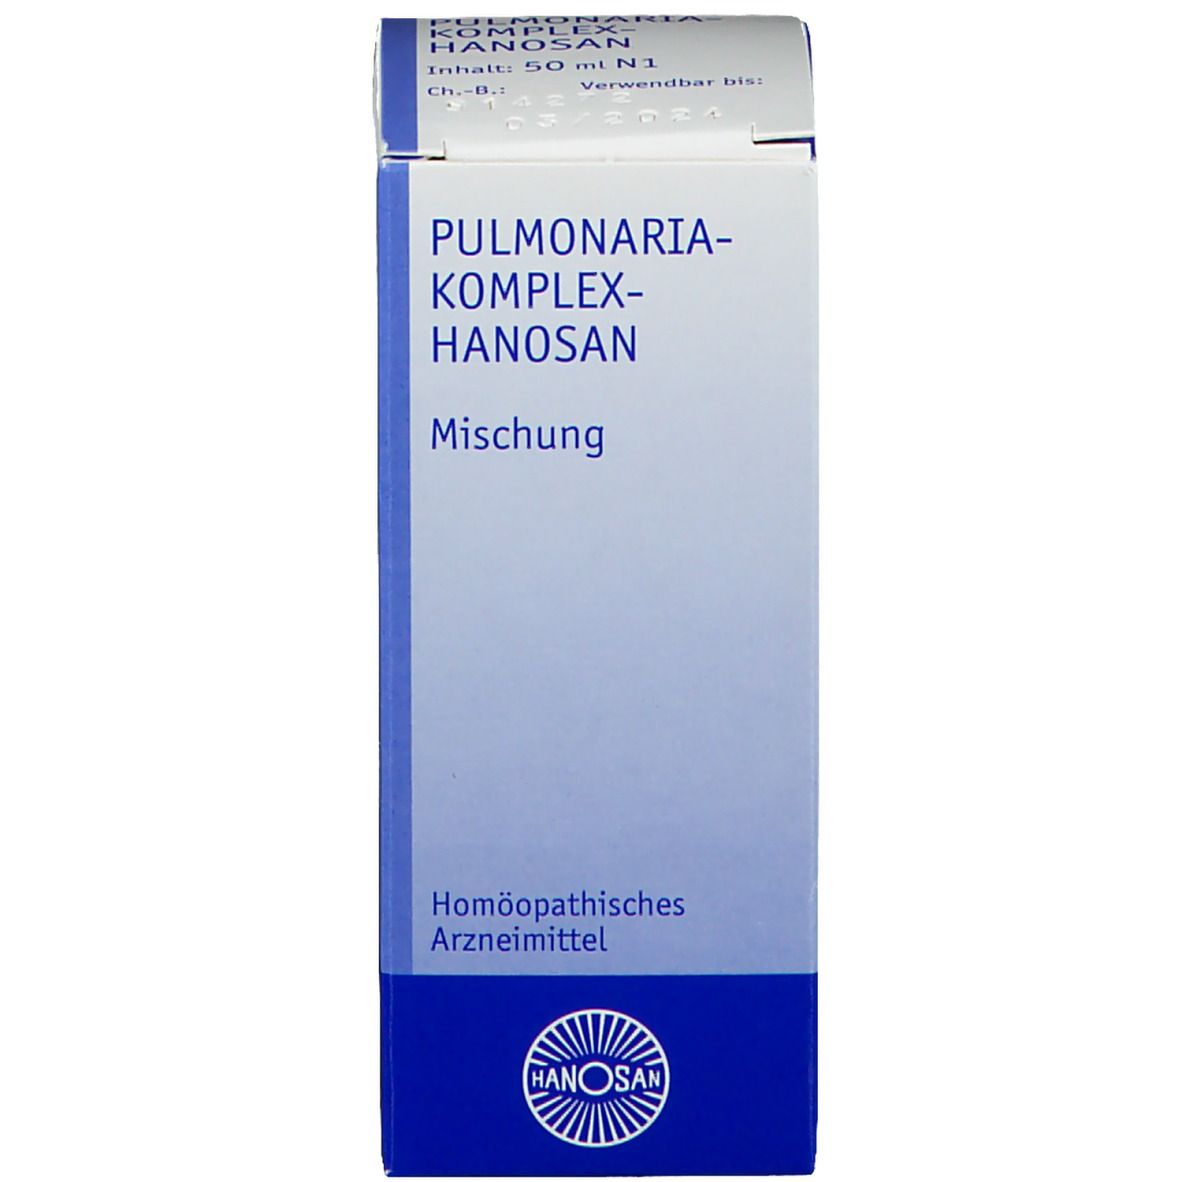 Pulmonaria-Komplex-Hanosan